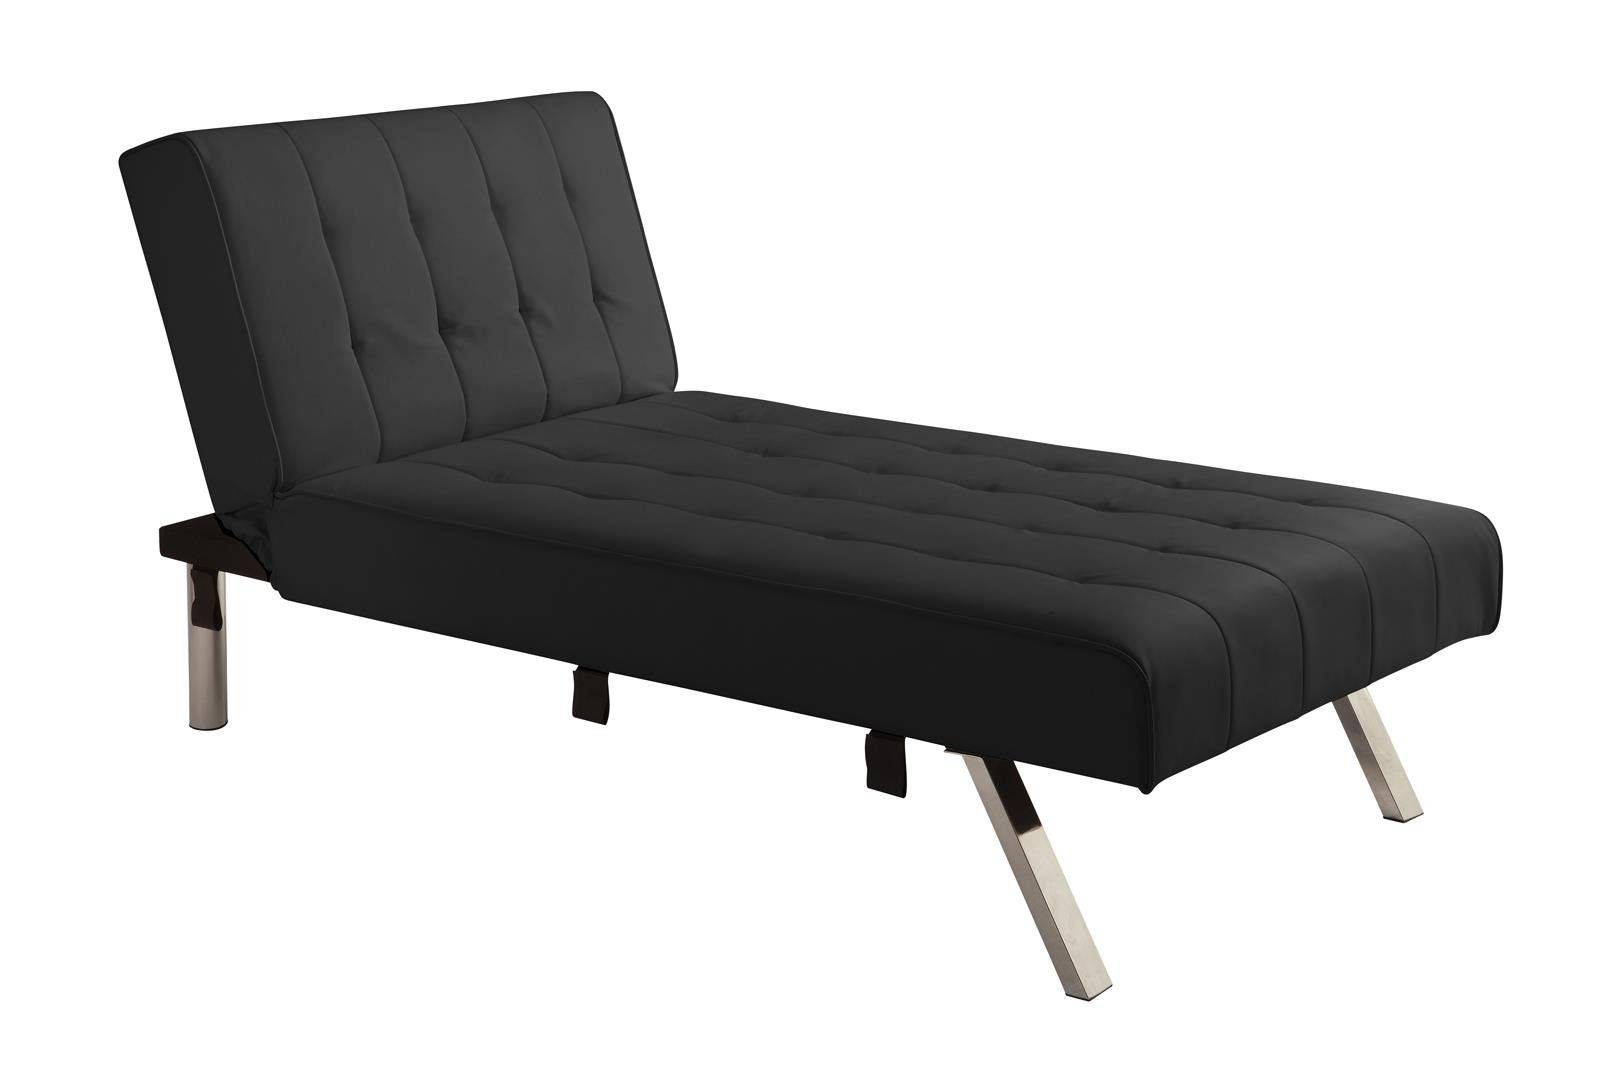 loft24 Chaiselongue Emily, Relaxliege Lounge Sessel, gepolstert, Länge 156 cm schwarz